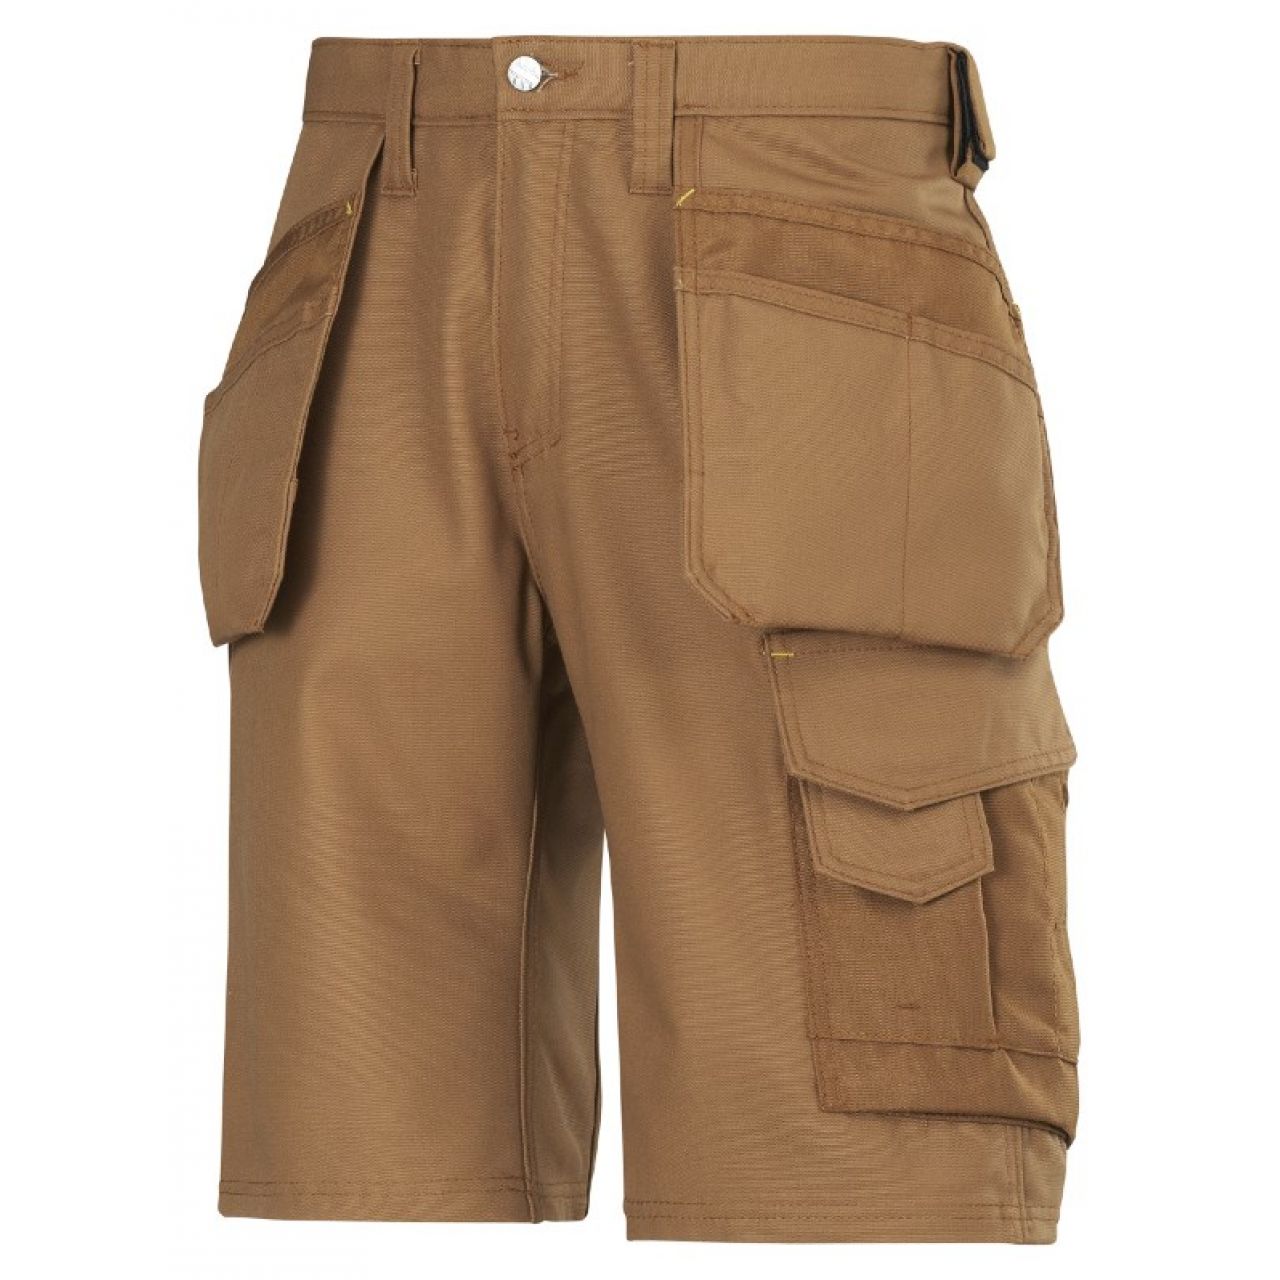 3014 Pantalones cortos de trabajo con bolsillos flotantes Canvas+ marron talla 70